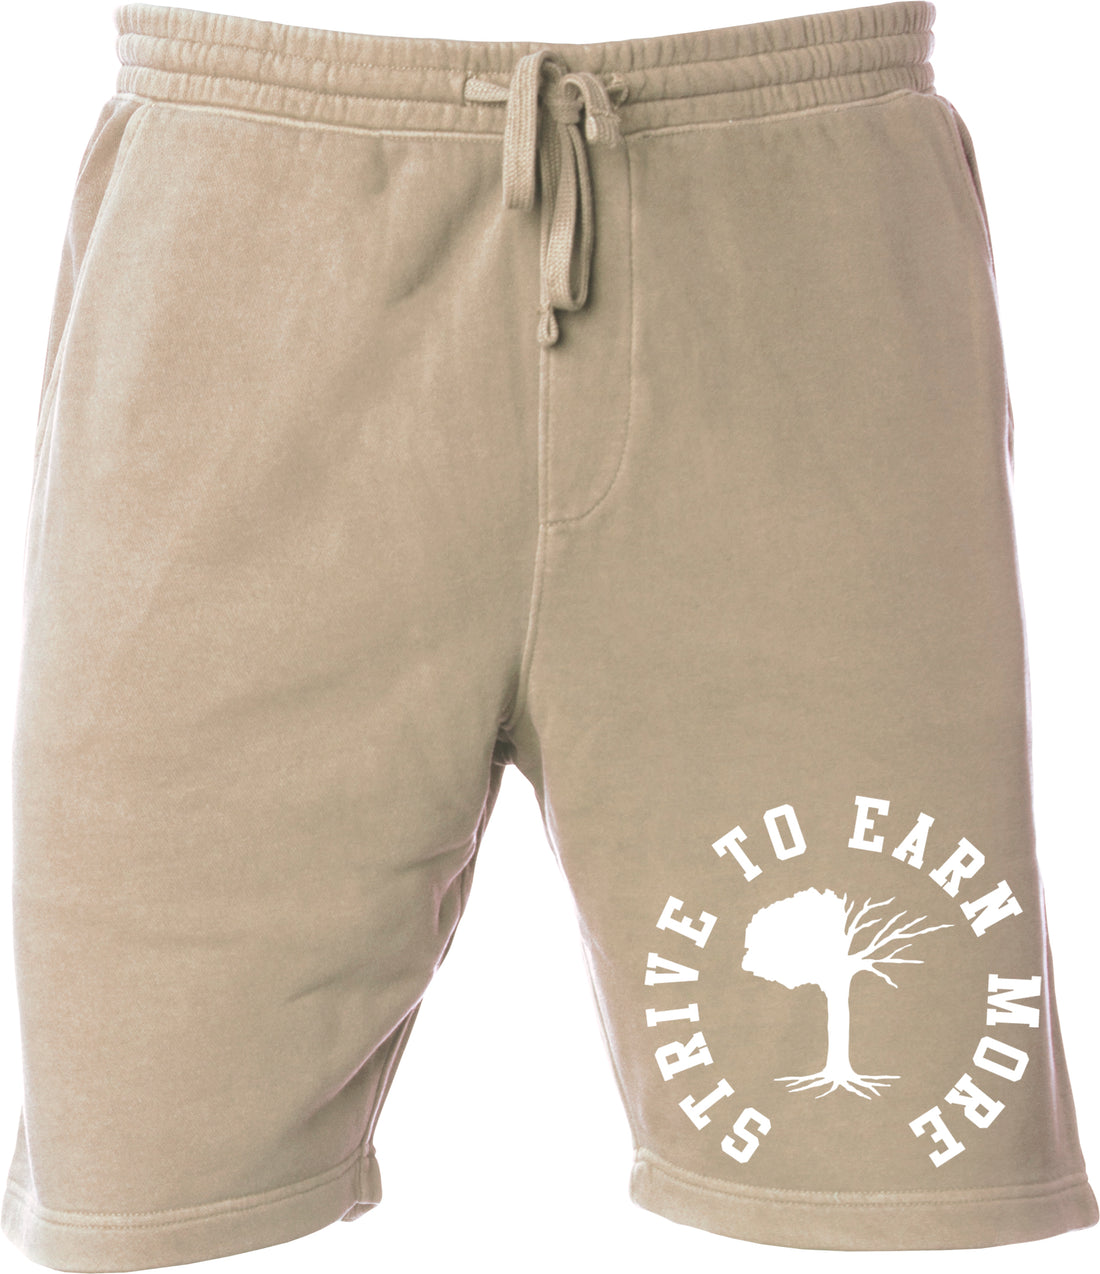 STEM Men's Summertime "Blazer" Shorts